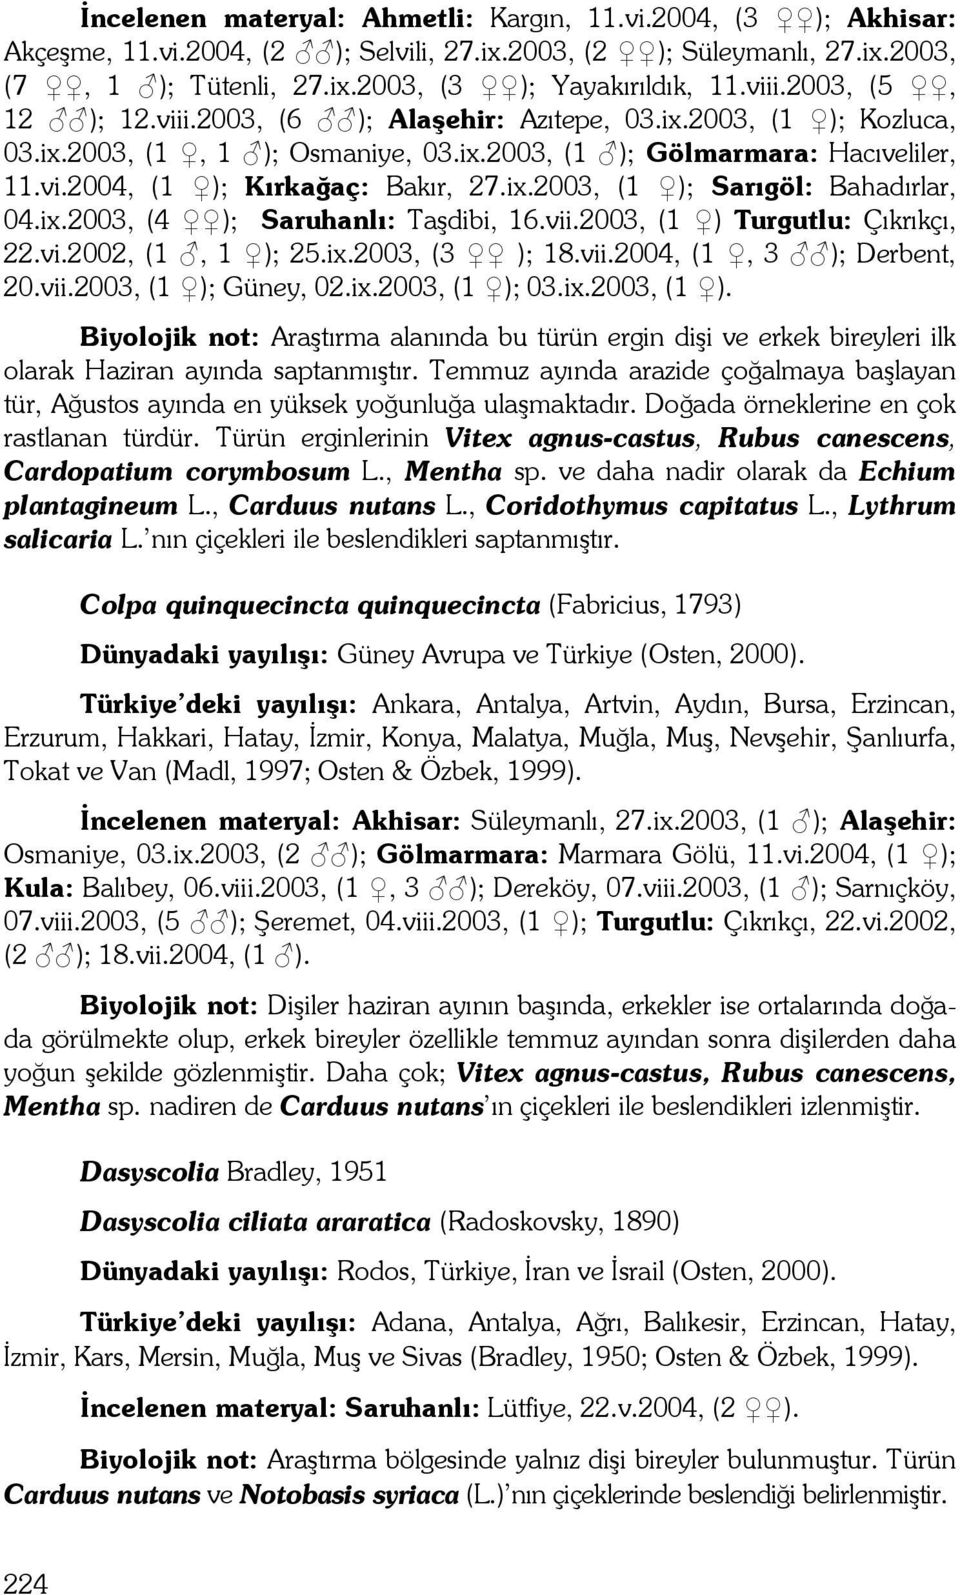 ix.2003, (4 ); Saruhanlı: Taşdibi, 16.vii.2003, (1 ) Turgutlu: Çıkrıkçı, 22.vi.2002, (1, 1 ); 25.ix.2003, (3 ); 18.vii.2004, (1, 3 ); Derbent, 20.vii.2003, (1 ); Güney, 02.ix.2003, (1 ); 03.ix.2003, (1 ). Biyolojik not: Araştırma alanında bu türün ergin dişi ve erkek bireyleri ilk olarak Haziran ayında saptanmıştır.